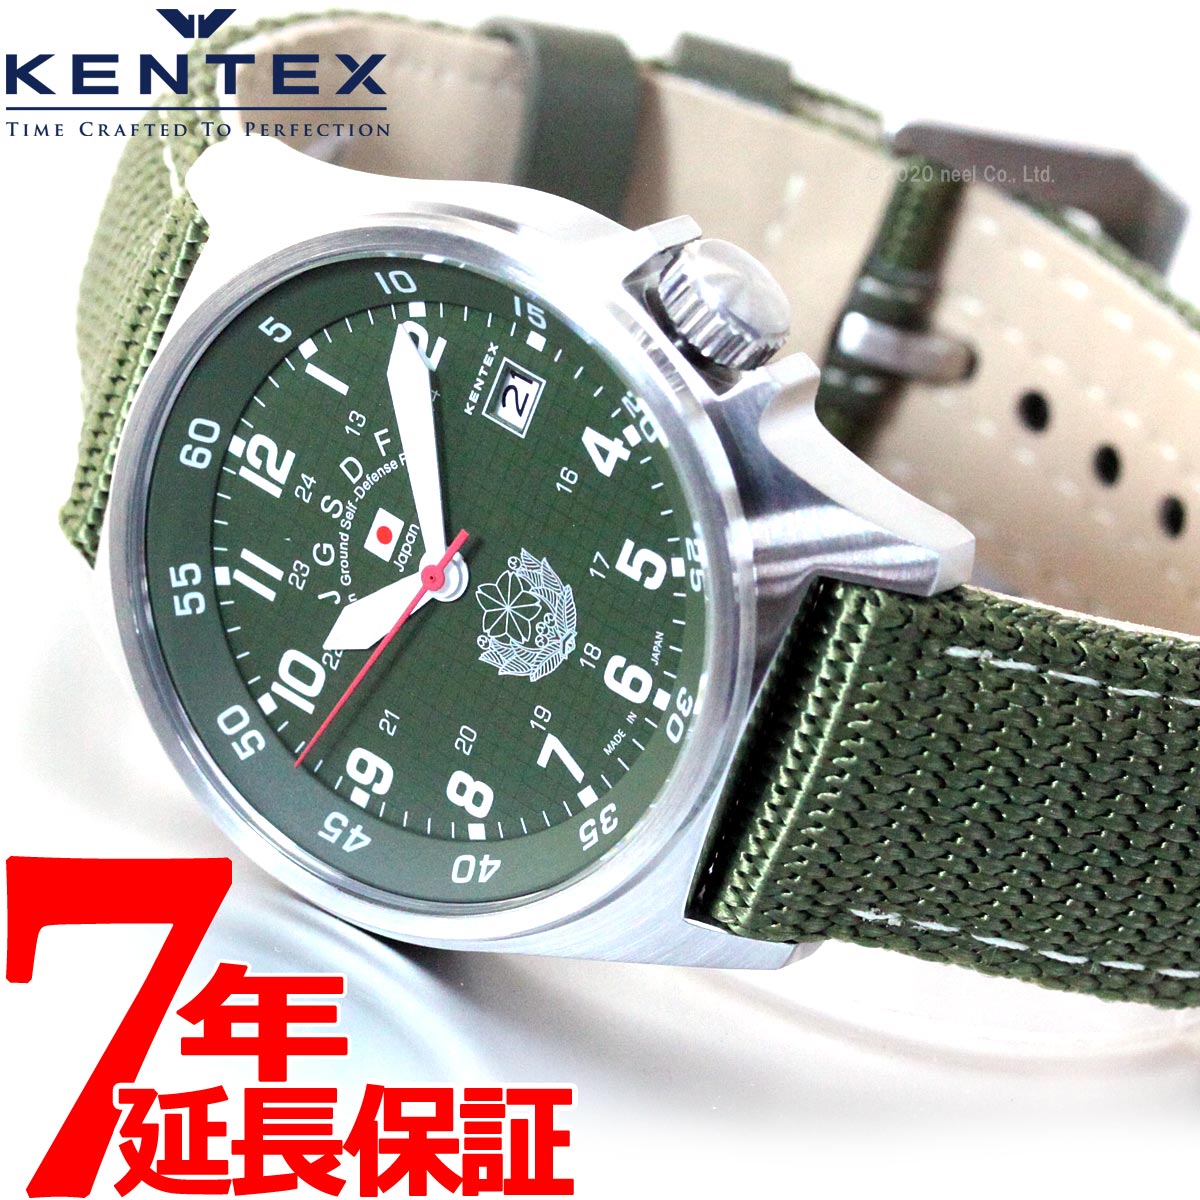 KENTEX ケンテックス 腕時計 メンズ JSDF スタンダード 自衛隊モデル 陸上自衛隊 ナイロンバンド S455M-01